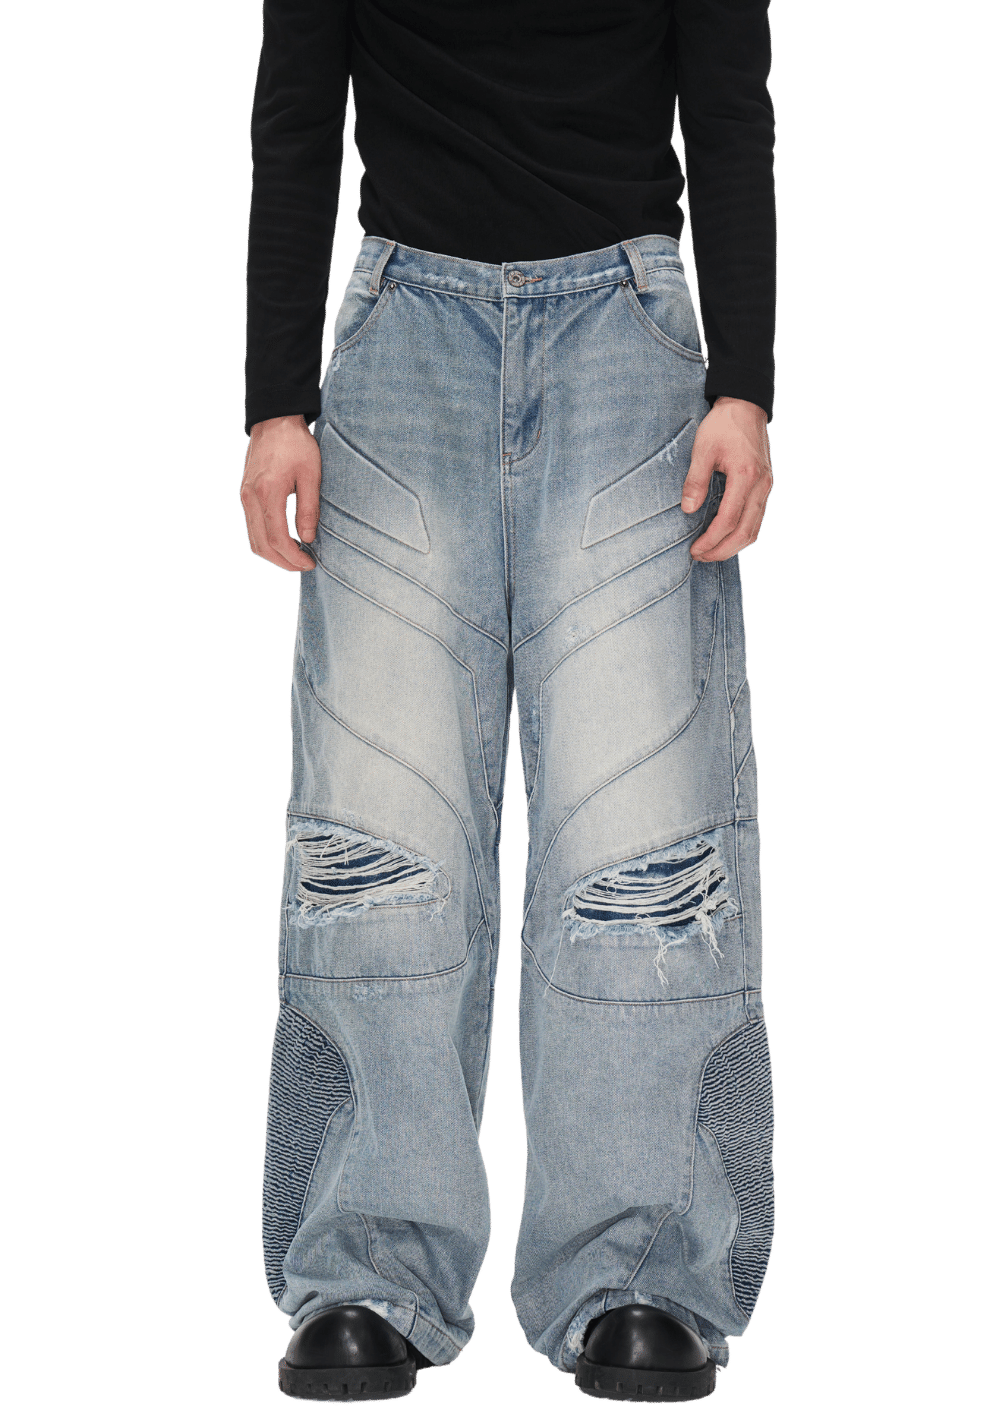 Distressed Vintage Jeans - PSYLOS 1, Distressed Vintage Jeans, Pants, BLIND NO PLAN, PSYLOS 1